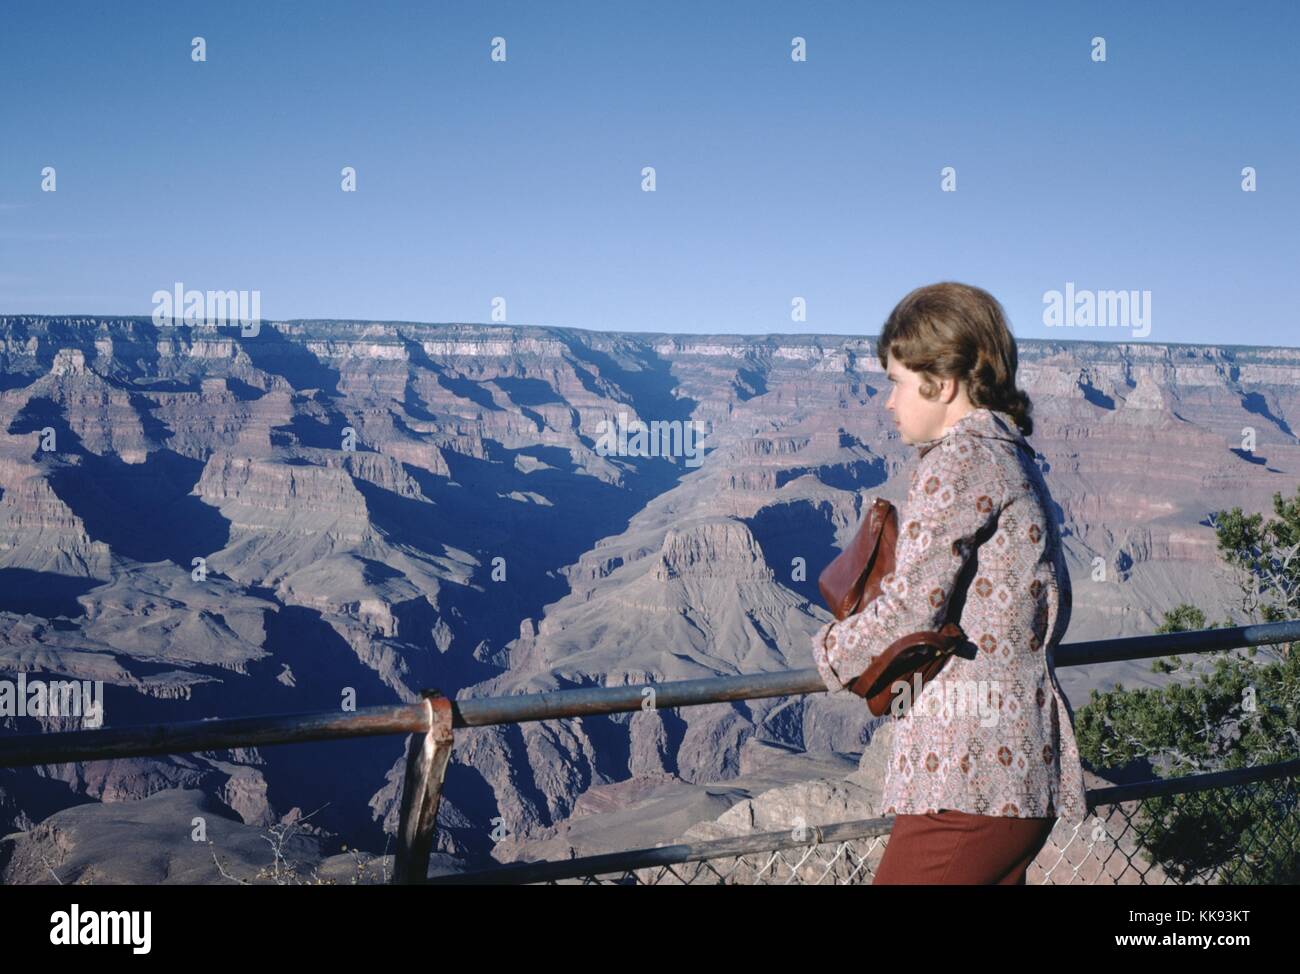 Image instantanée vernaculaire de grand canyon et touristique avec des montagnes, 1974. Banque D'Images